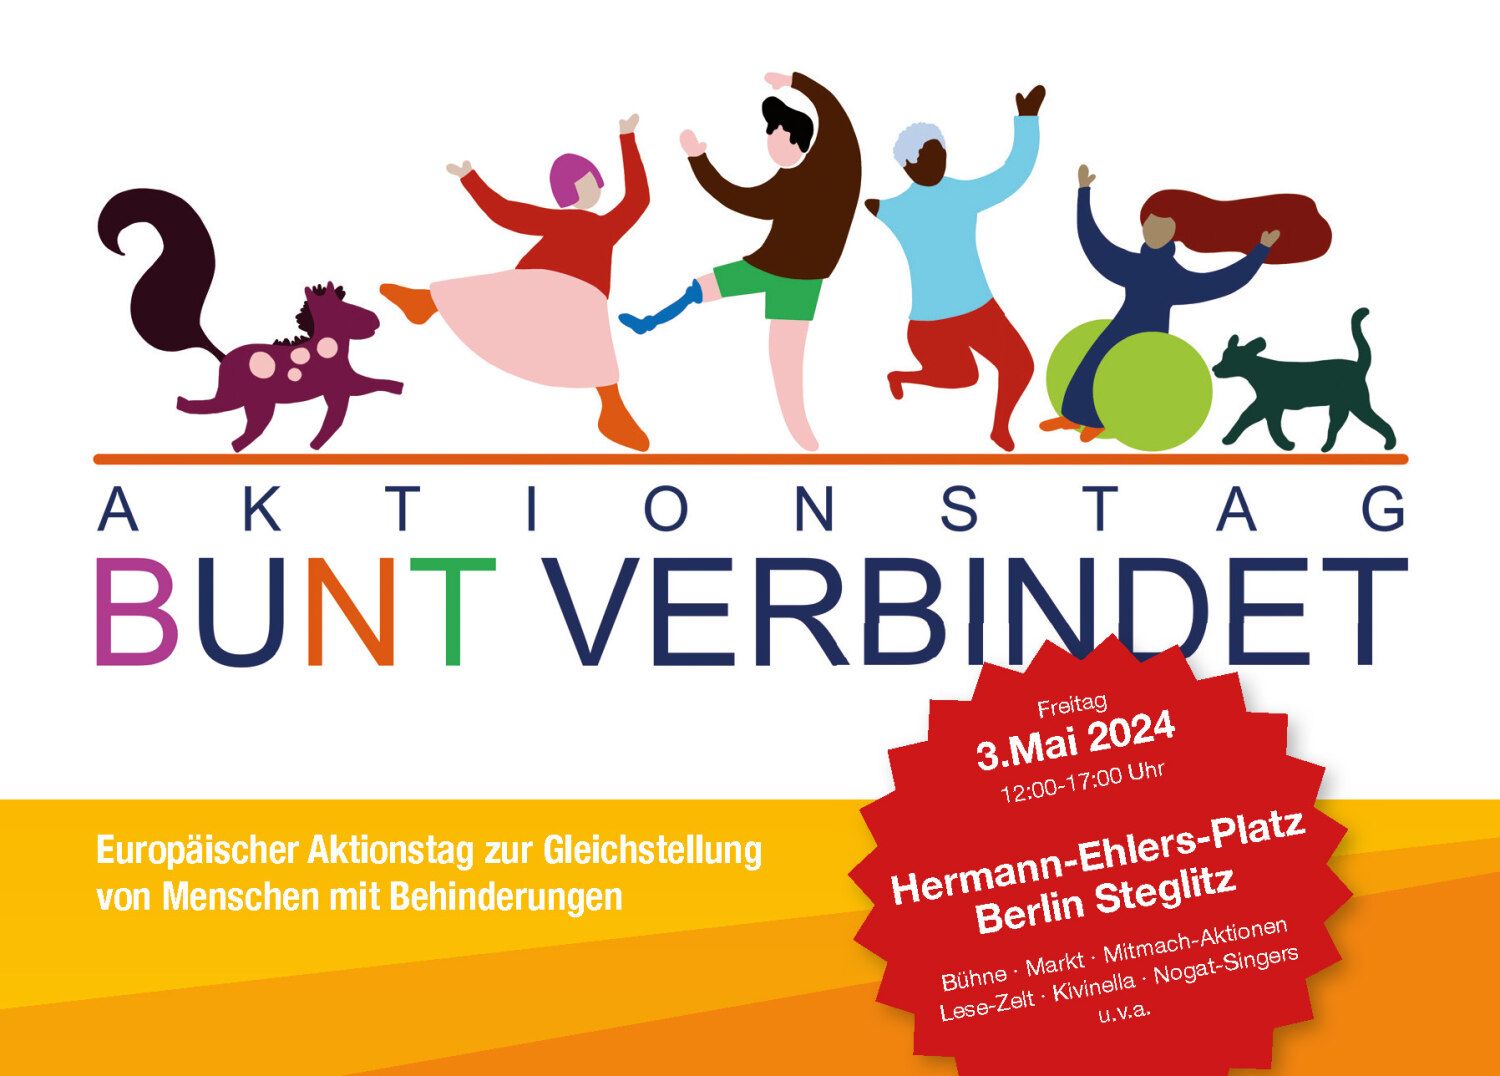 Bildvergrößerung: Aktionstag Bunt verbindet am 03.05.2024 auf dem Hermann-Ehlers-Platz (Vorderseite der Postkarte)